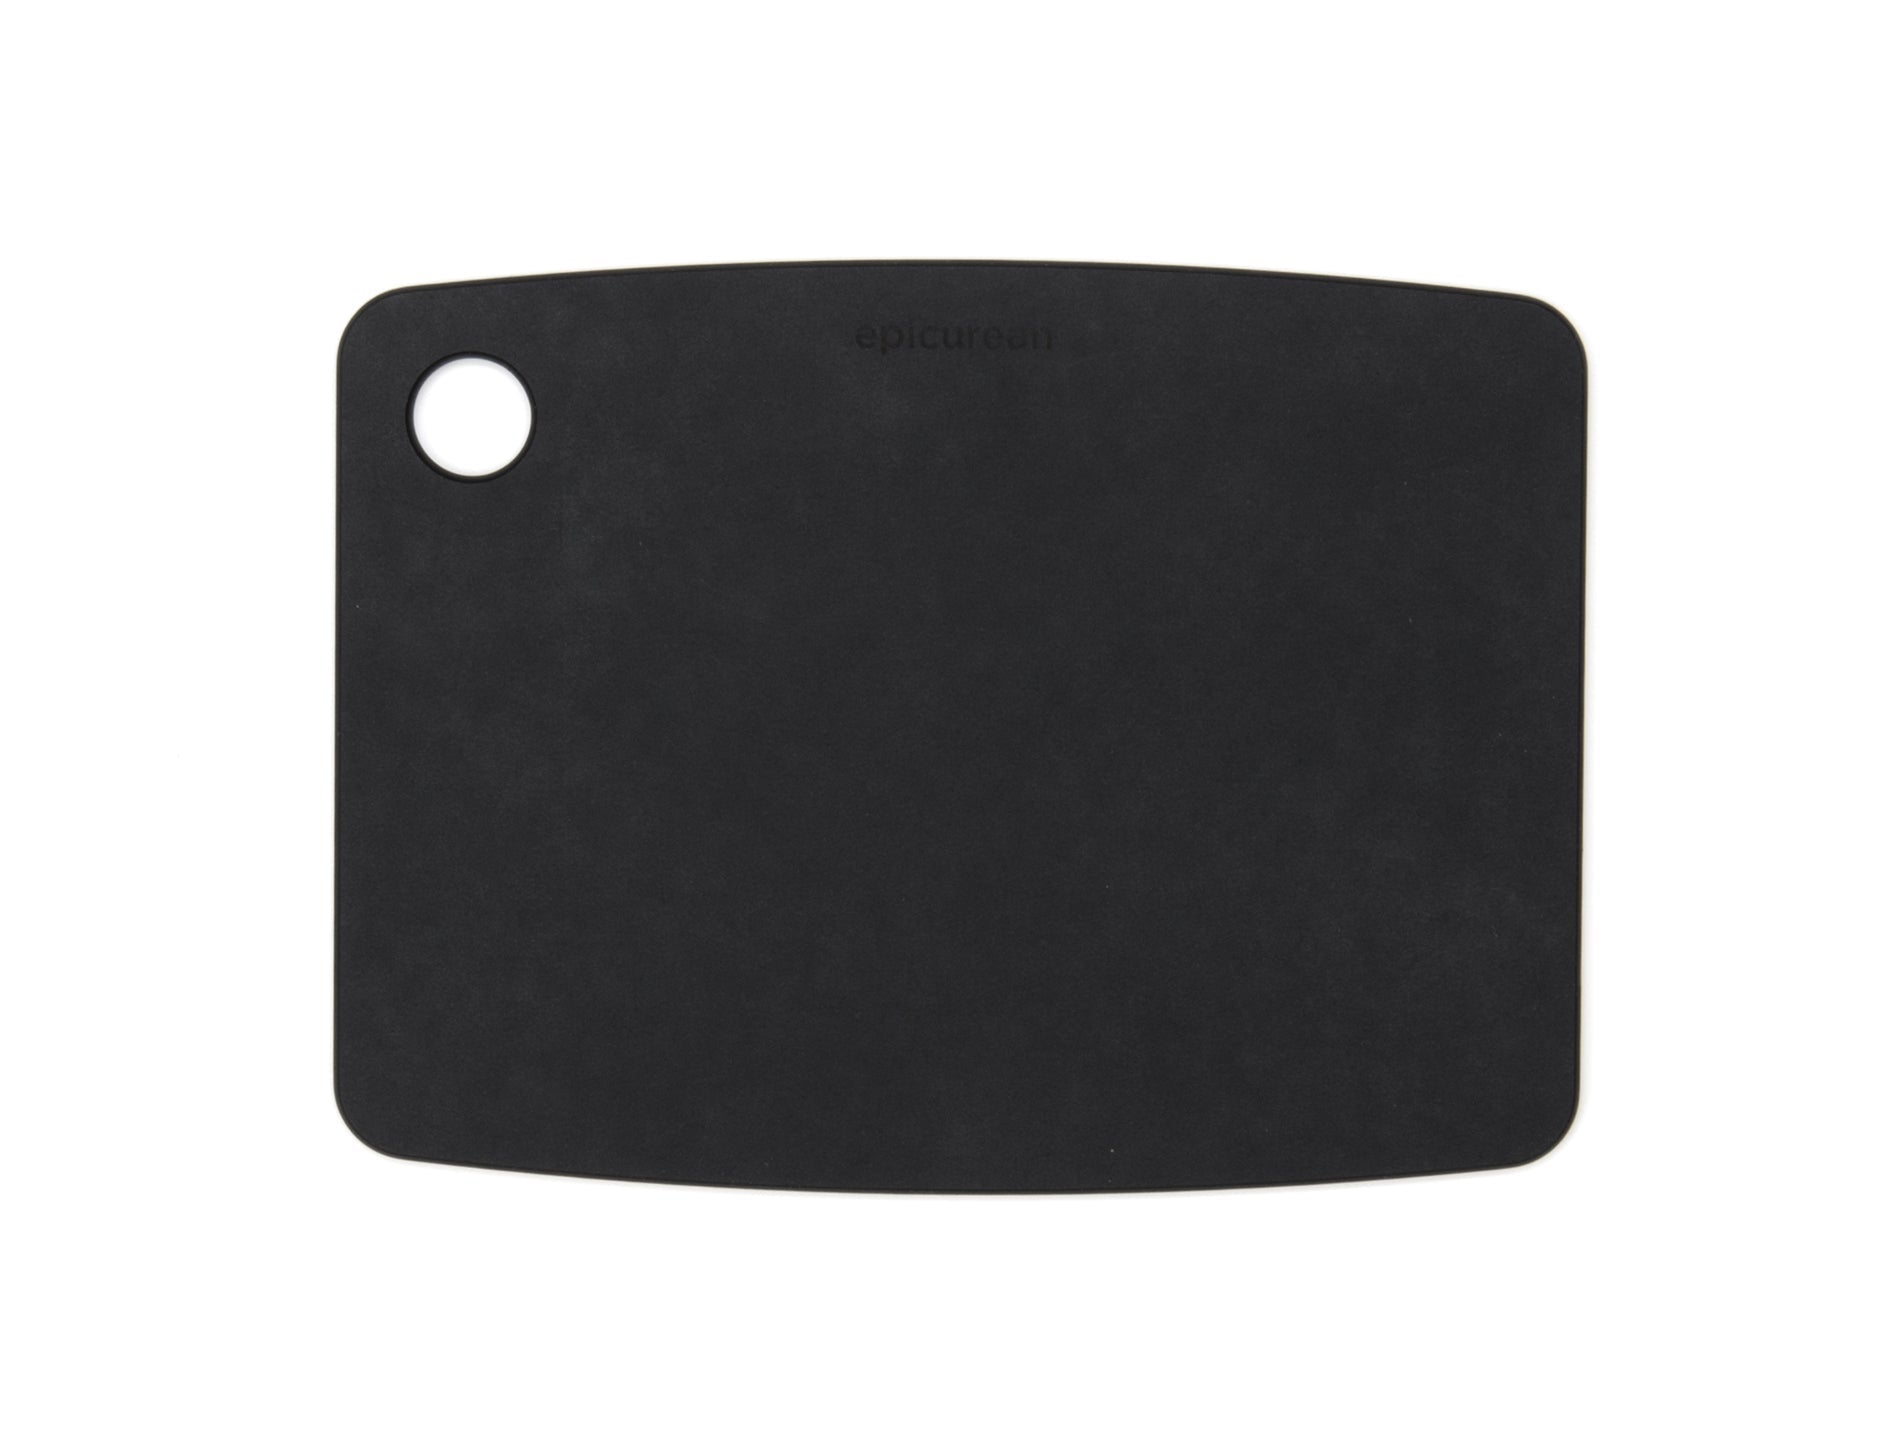 Cutting board - black slate 8